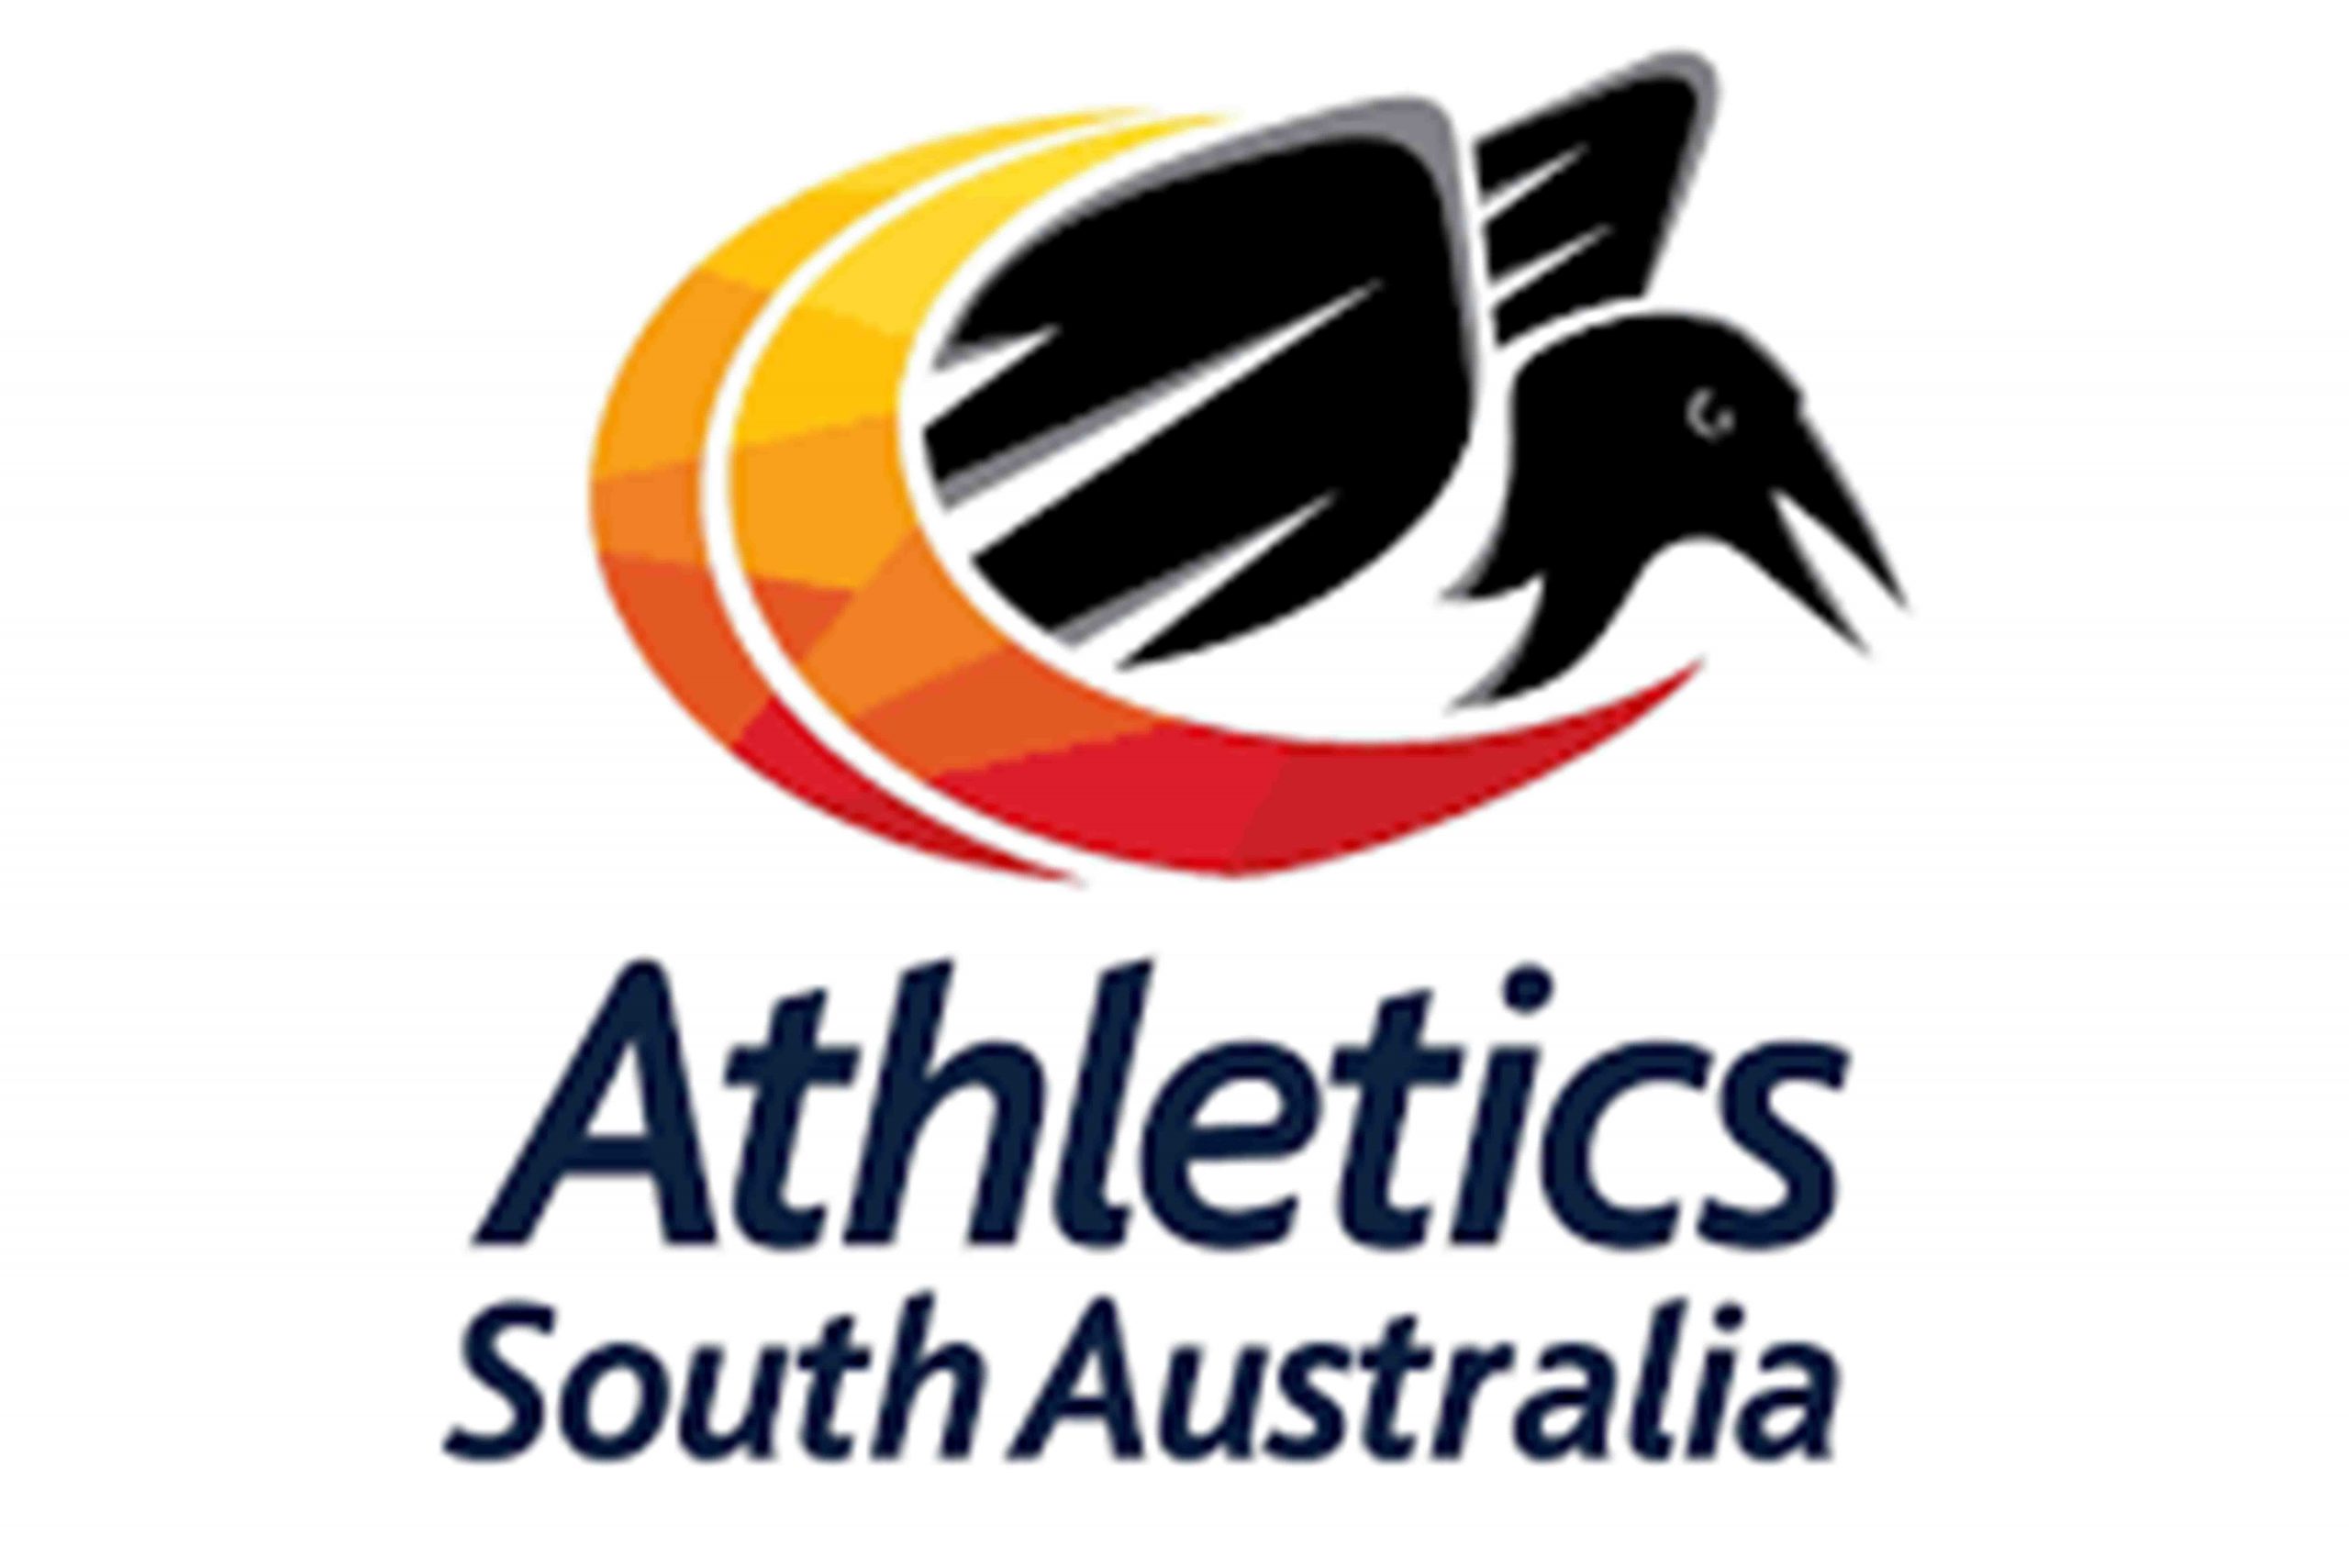 Athletics South Australia logo on a white background